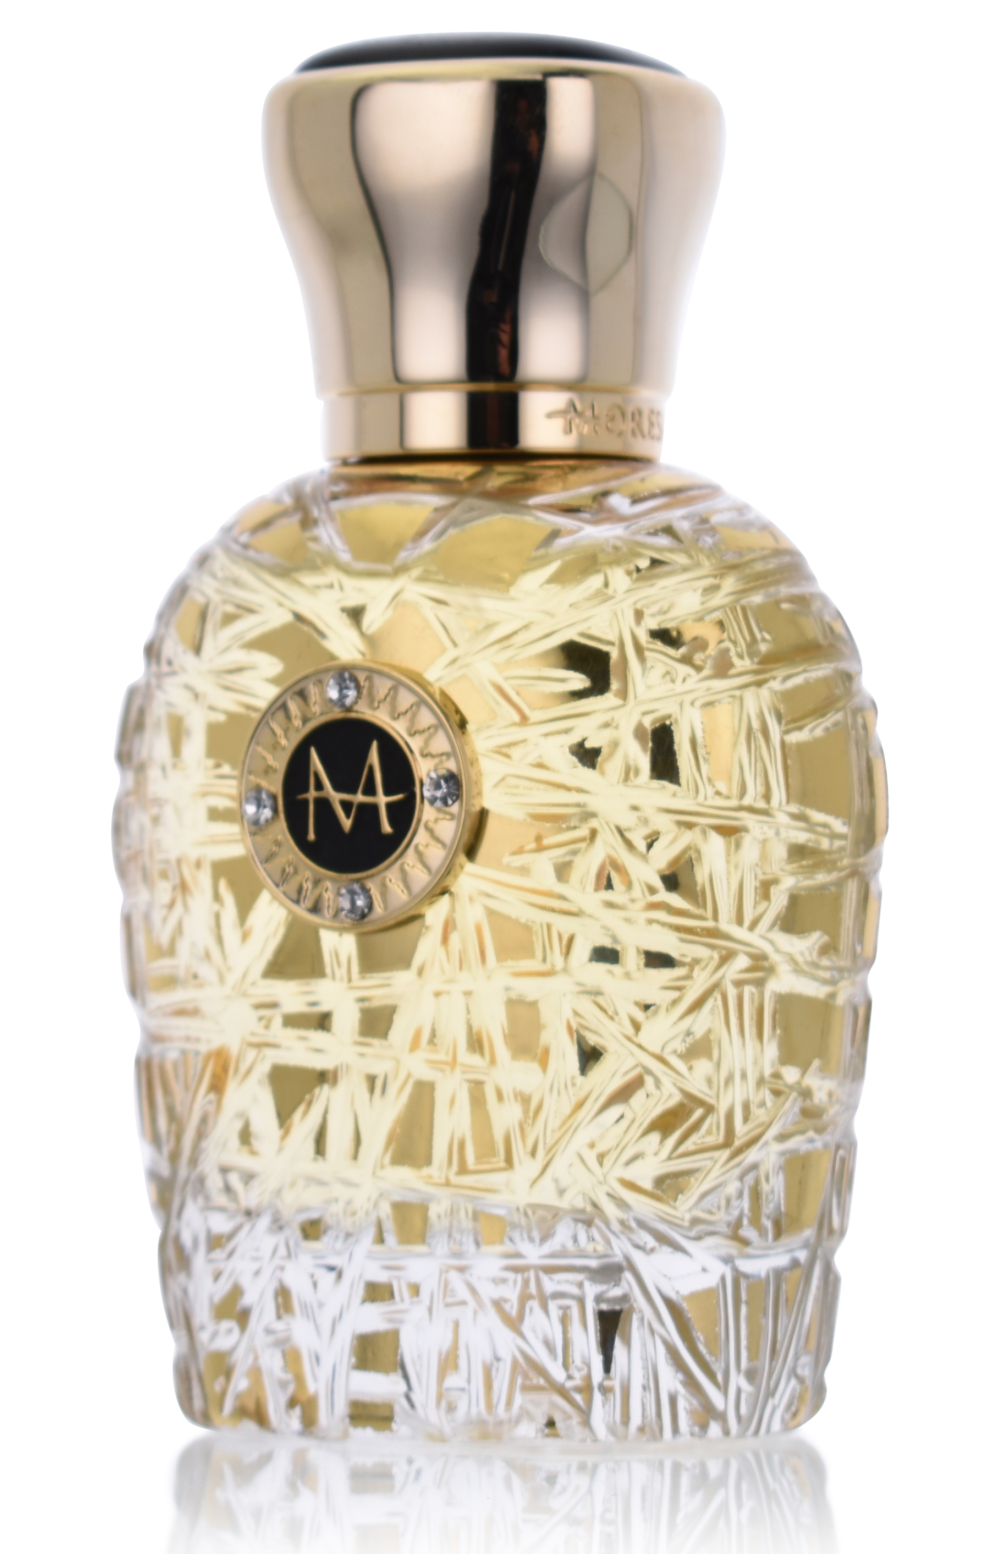 Moresque Gold Collection Sole 5 ml Eau de Parfum Abfüllung